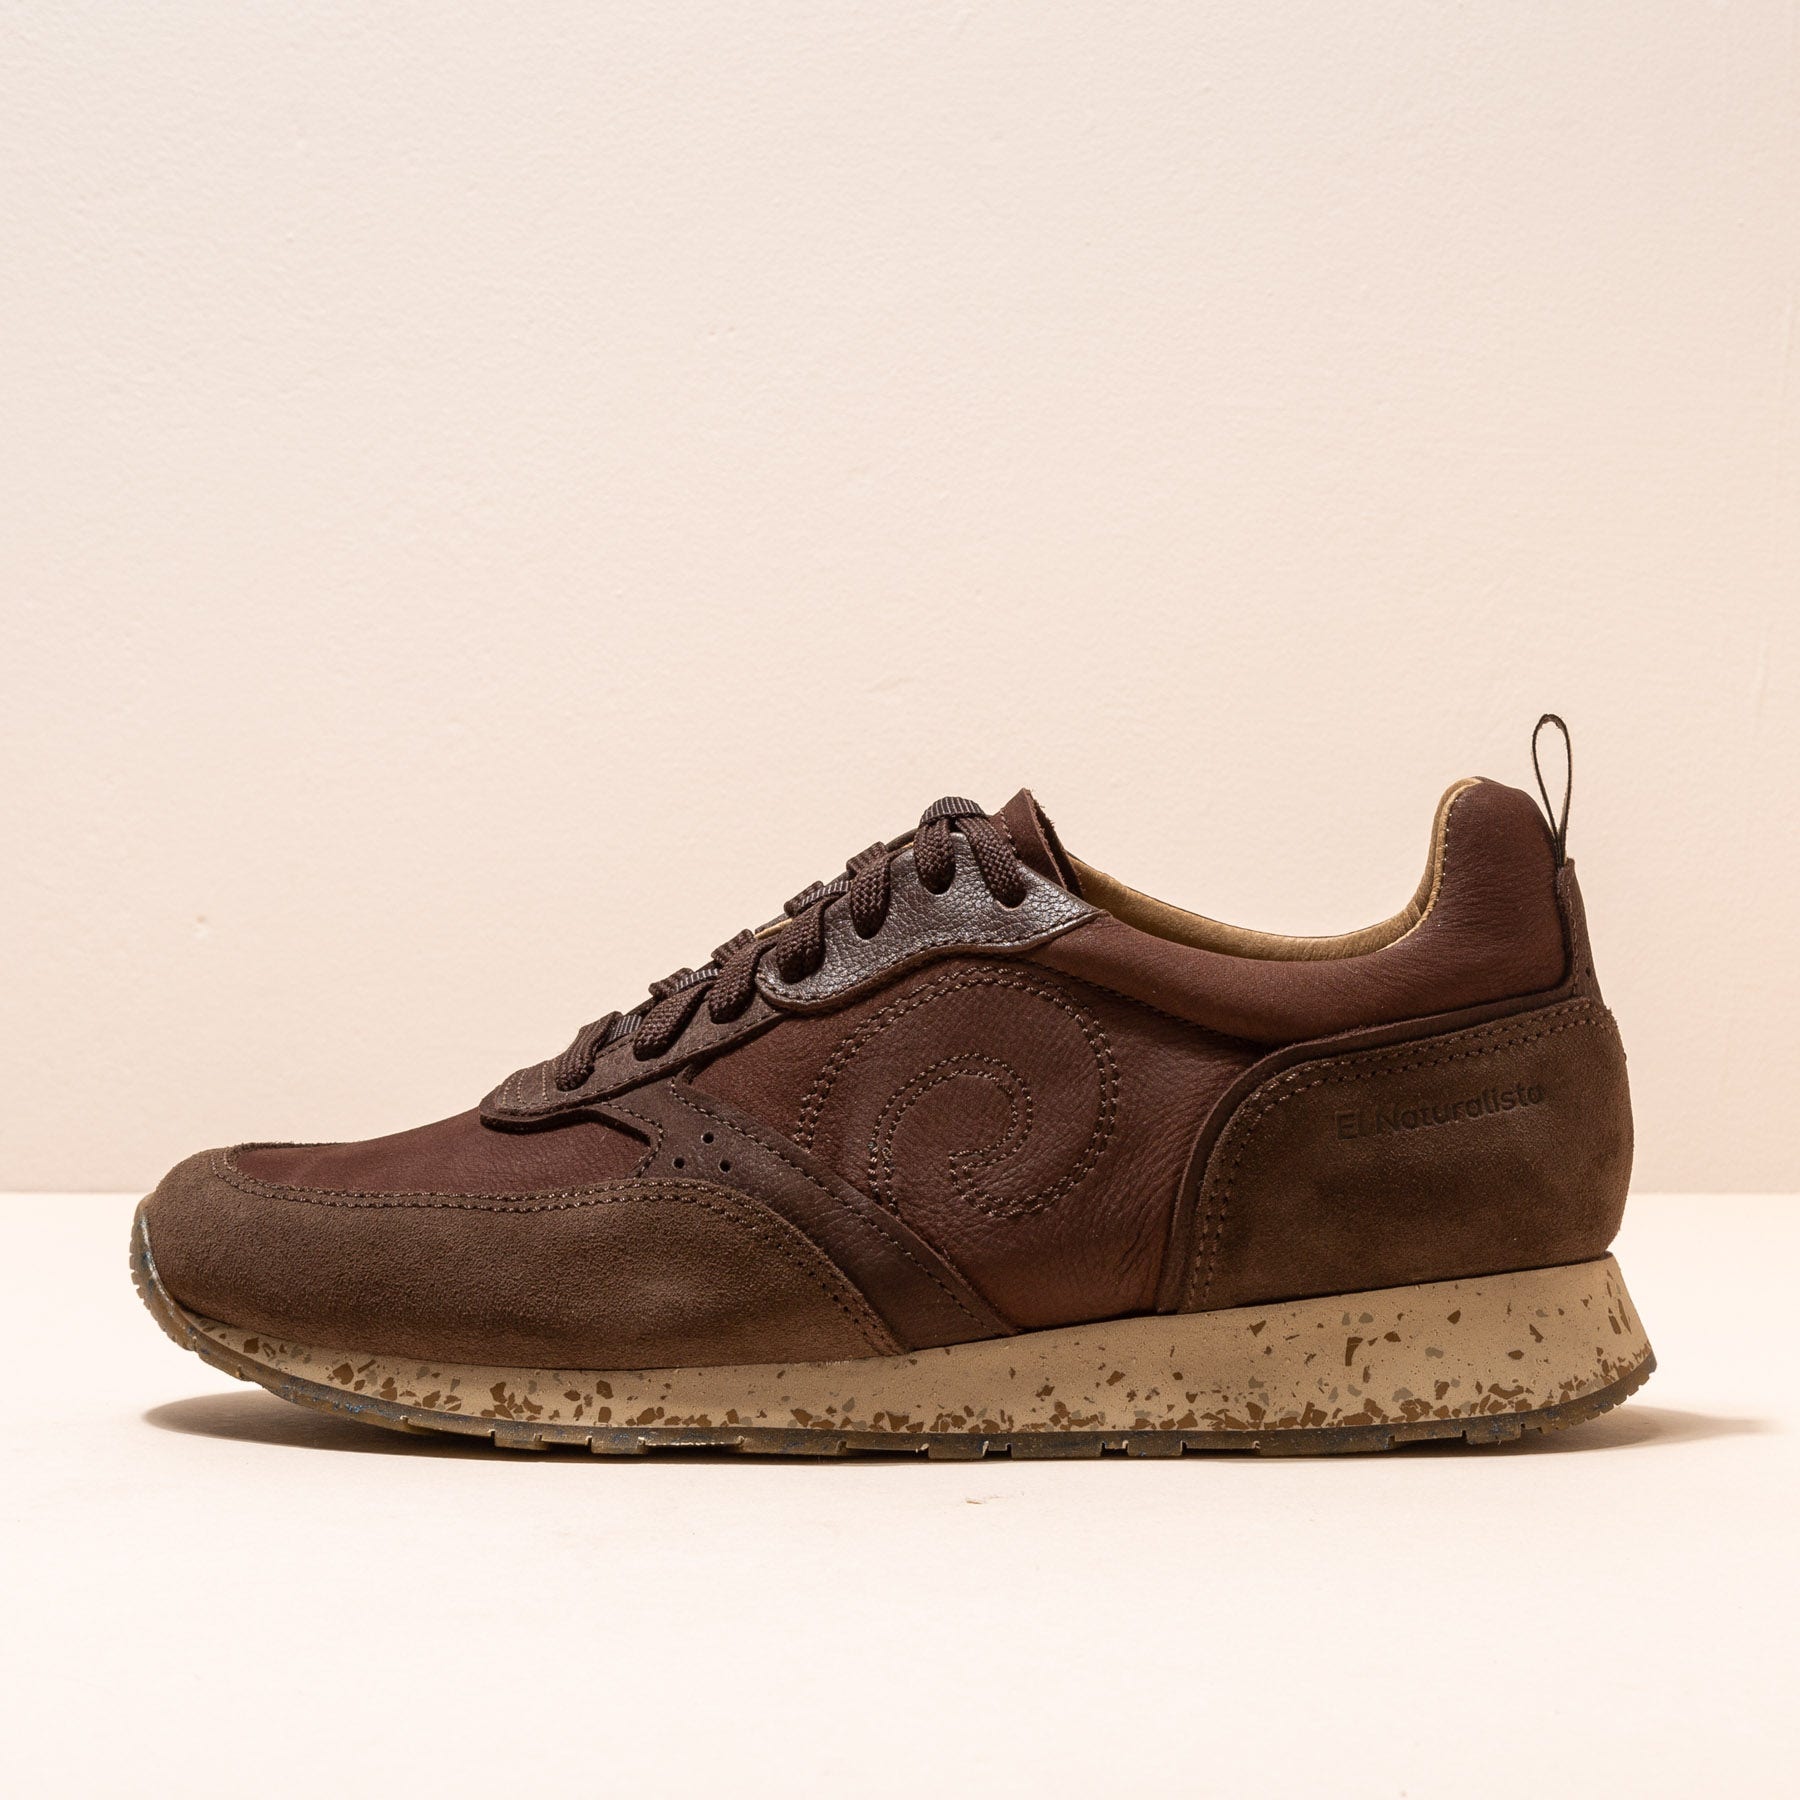 El Naturalista - El naturalista Zapatos N5680 MULTI MATERIAL BROWN/ WALKY para Hombre/Mujer color Brown